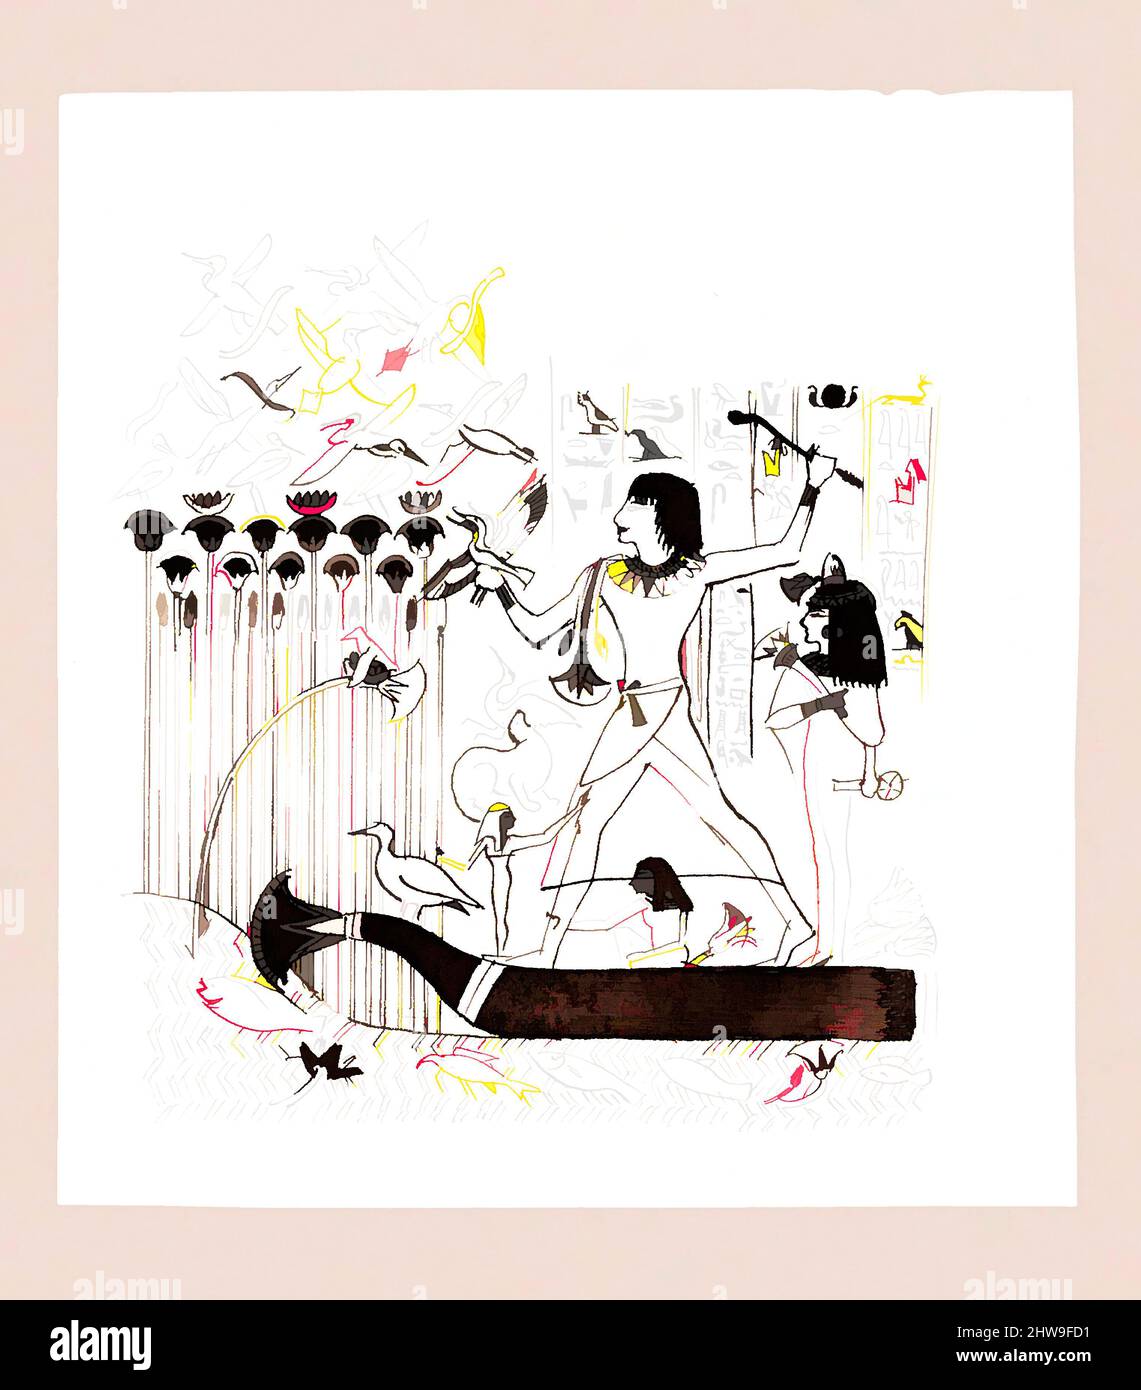 Art inspiré par la chasse aux oiseaux, après la Sculpture de secours égyptienne (de Scrapbook), ca. 1878, Graphite, stylo et encre sur papier vélin blanc cassé, 5 1/4 x 4 3/4 po. (13,3 x 12,1 cm), dessins, John Singer Sargent (américain, Florence 1856–1925 Londres, œuvres classiques modernisées par Artotop avec une touche de modernité. Formes, couleur et valeur, impact visuel accrocheur sur l'art émotions par la liberté d'œuvres d'art d'une manière contemporaine. Un message intemporel qui cherche une nouvelle direction créative. Artistes qui se tournent vers le support numérique et créent le NFT Artotop Banque D'Images